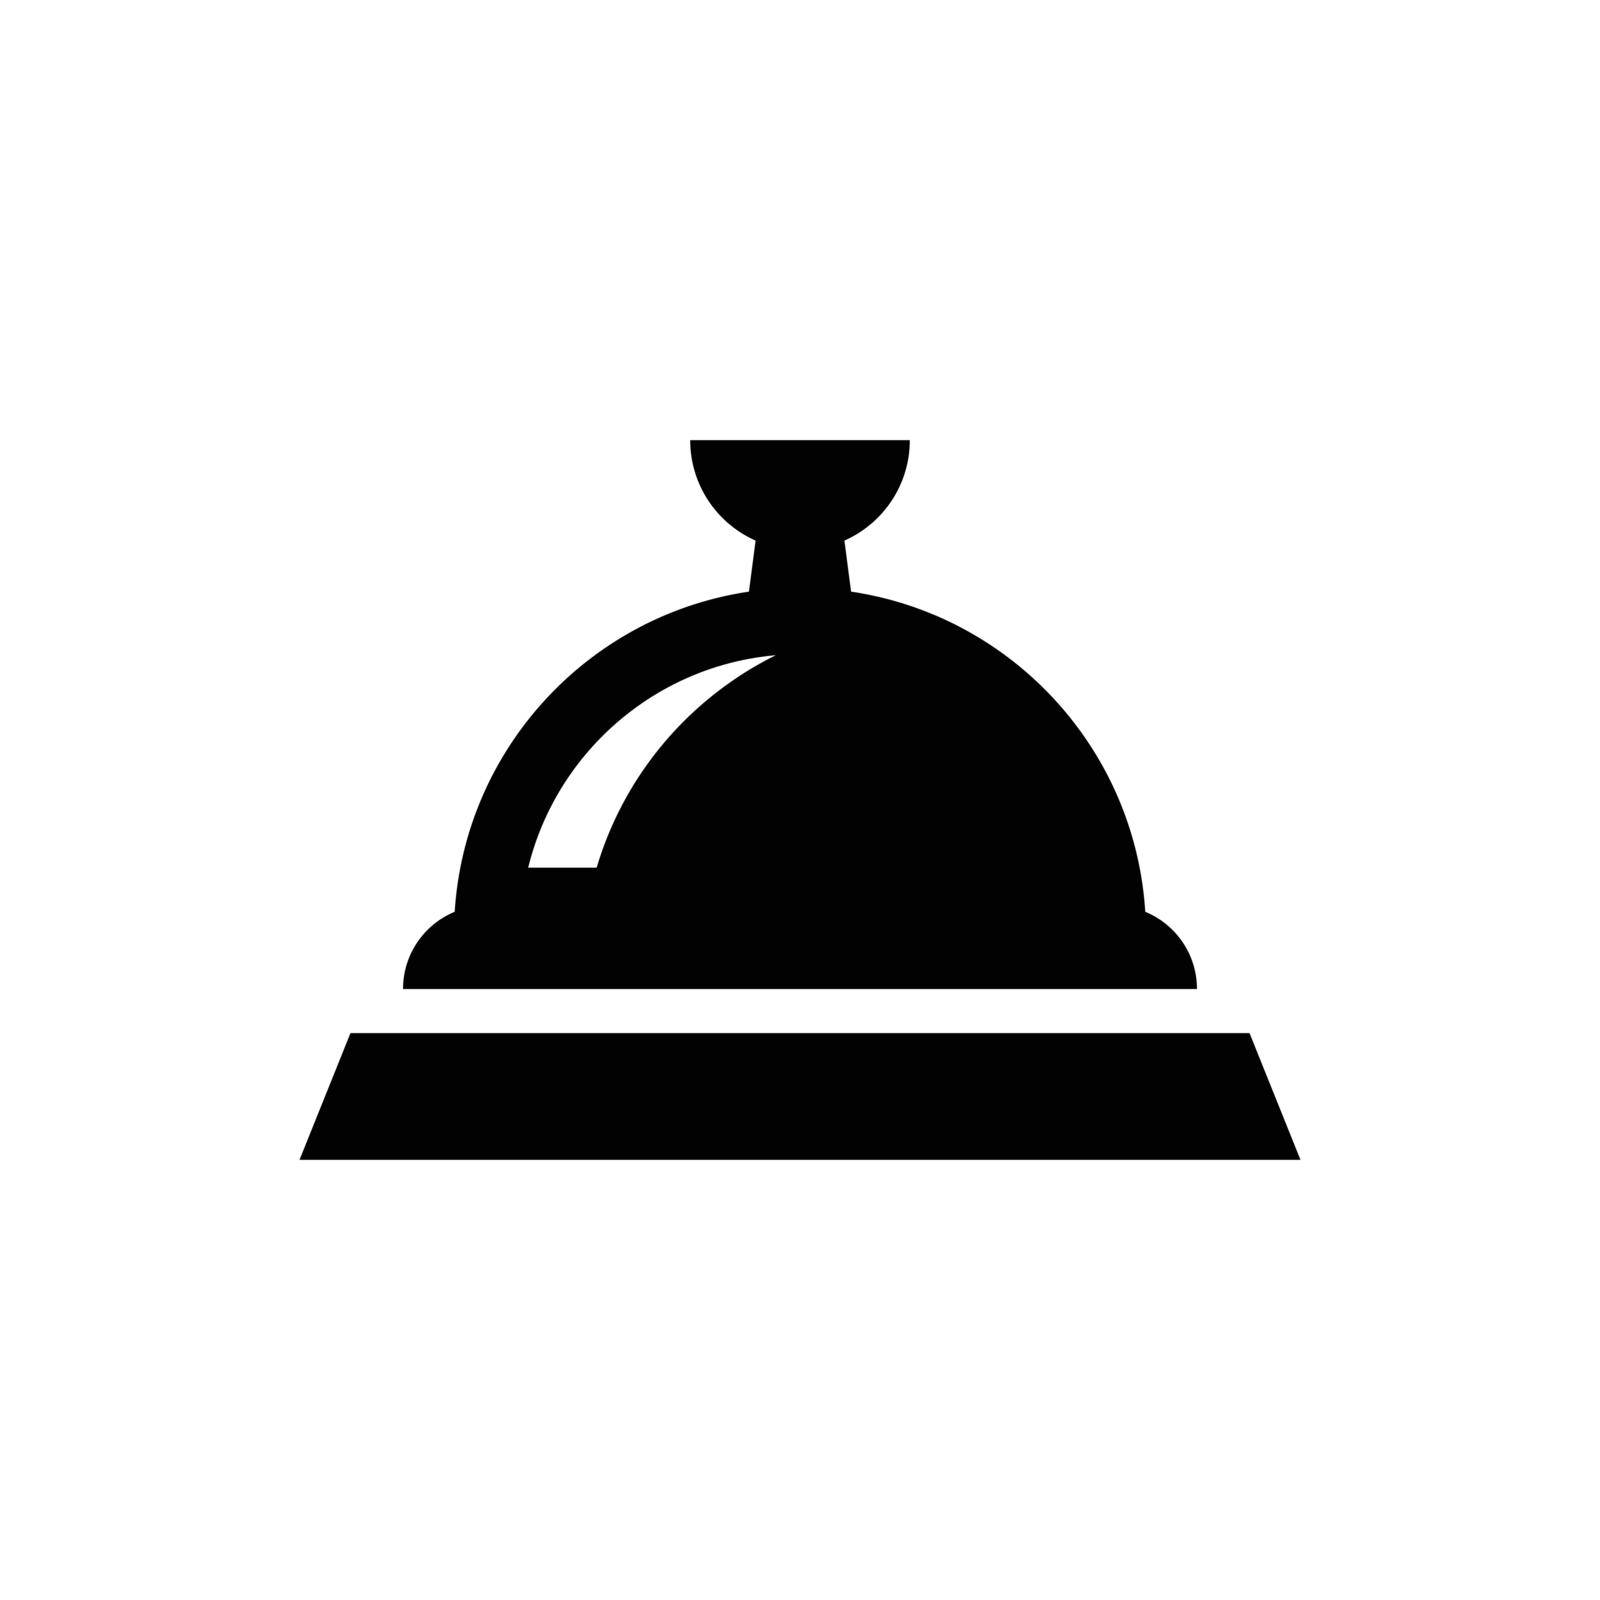 Restaurant platter icon by delwar018